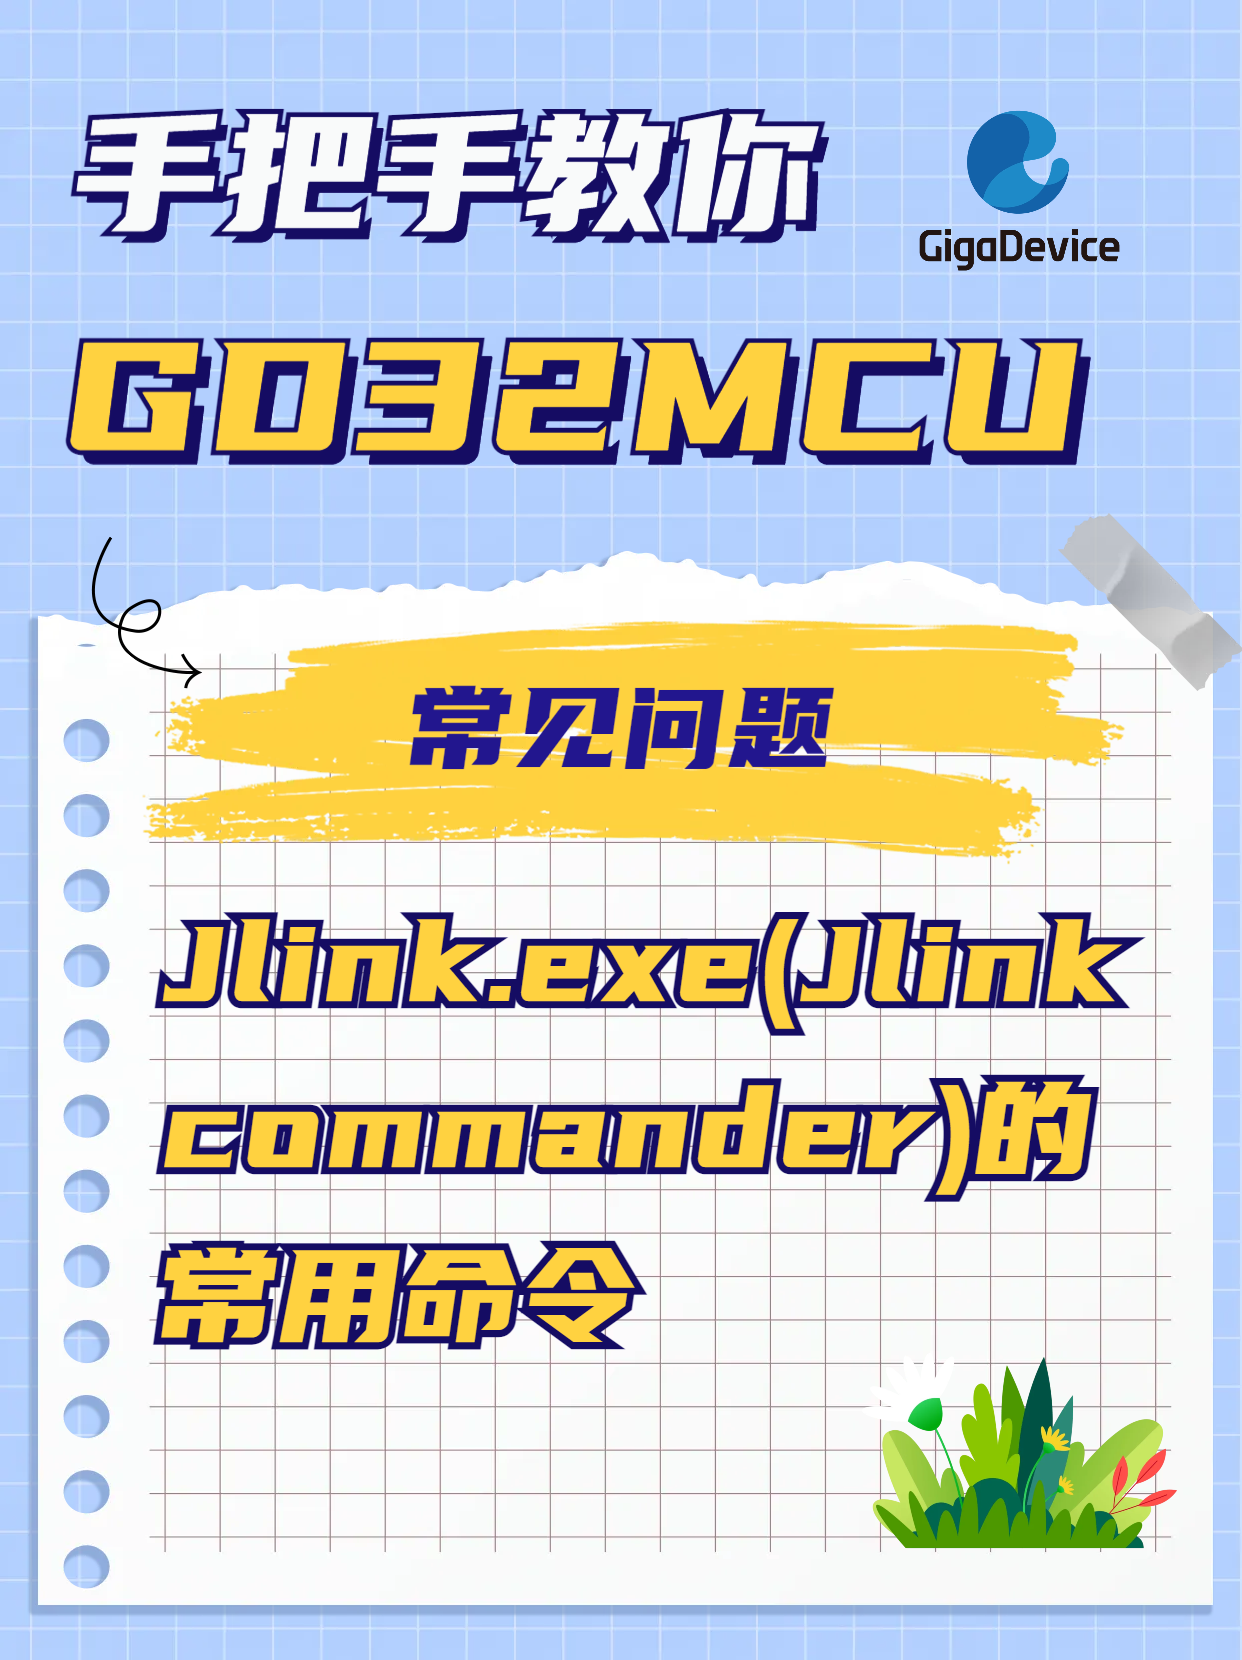  Jlink.exe(Jlink commander)的常用命令#GD32 #单片机 #Jlink #嵌入式 